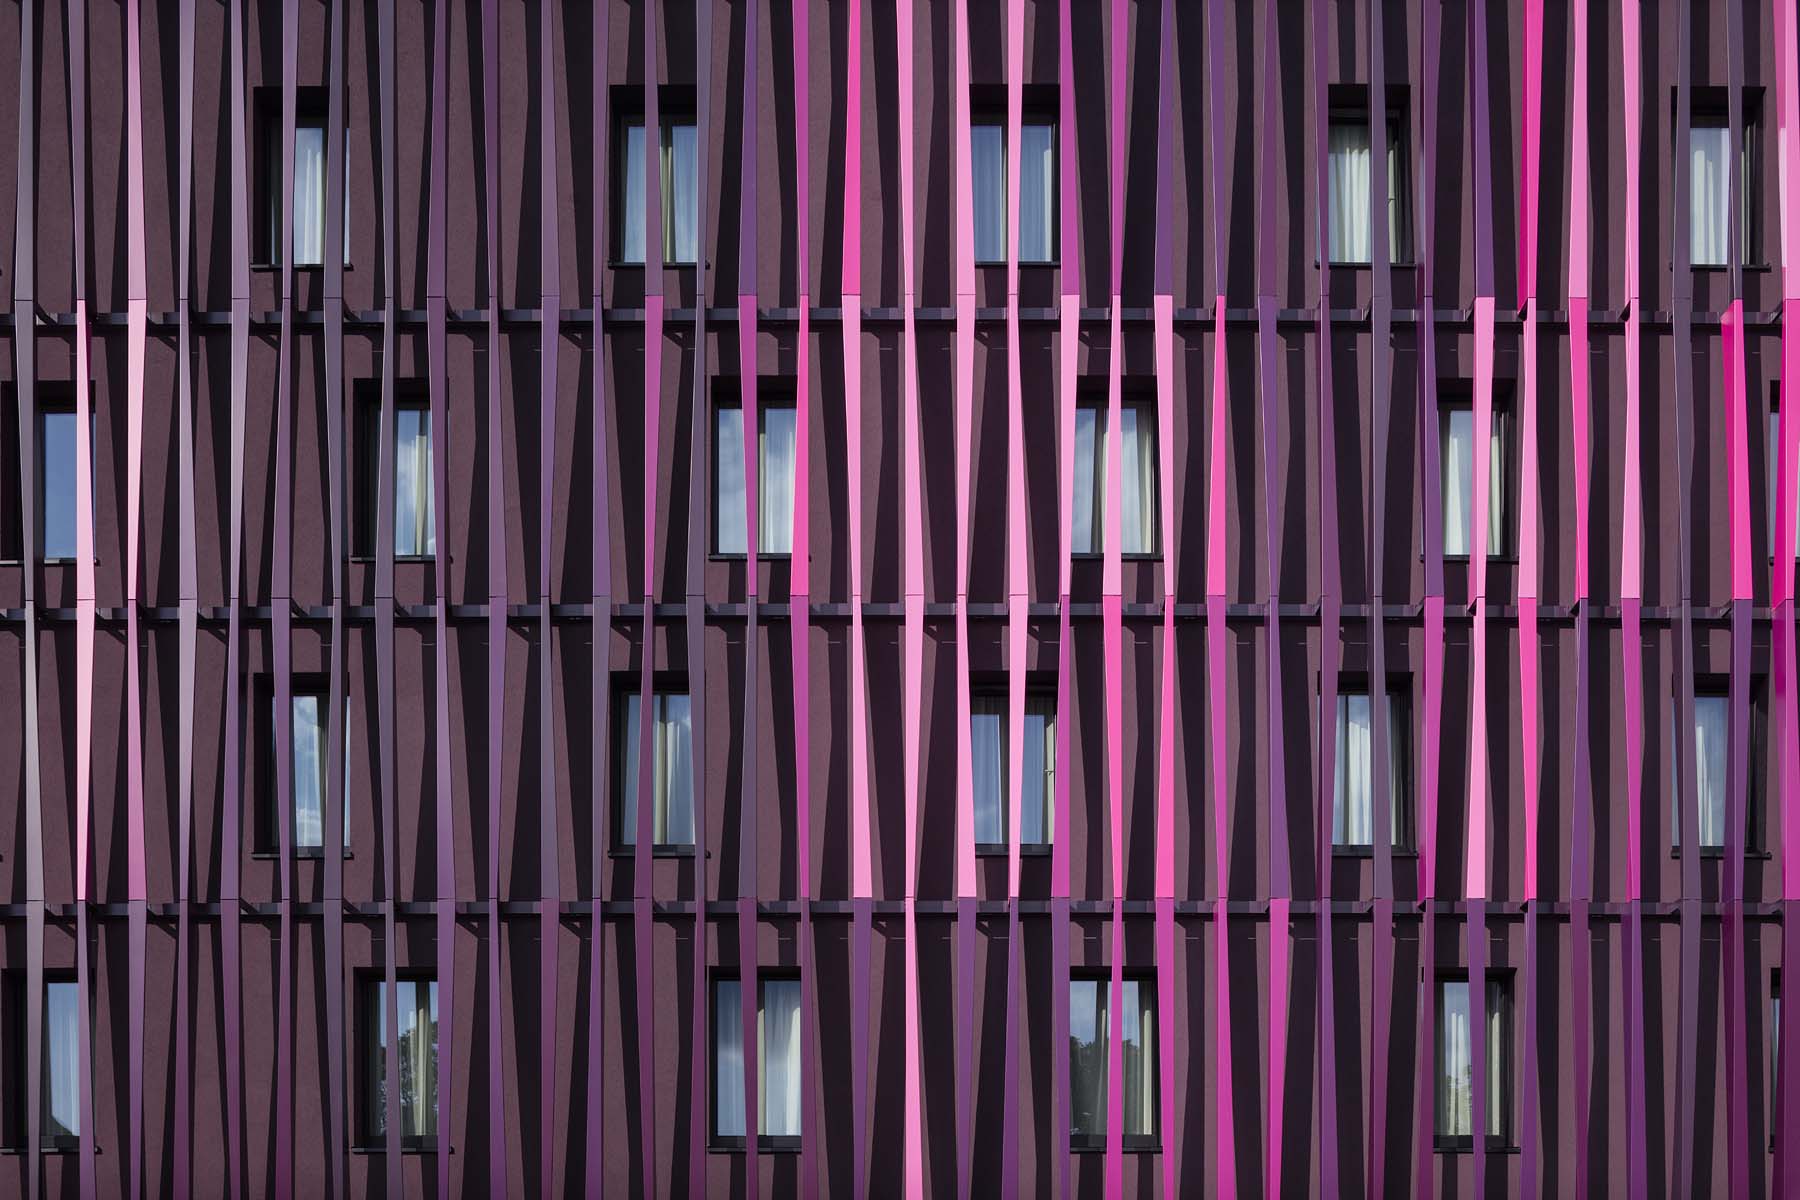 Hotel Tivoli Aachen    Cross Architekten      Architekturfotografie Jens Kirchner